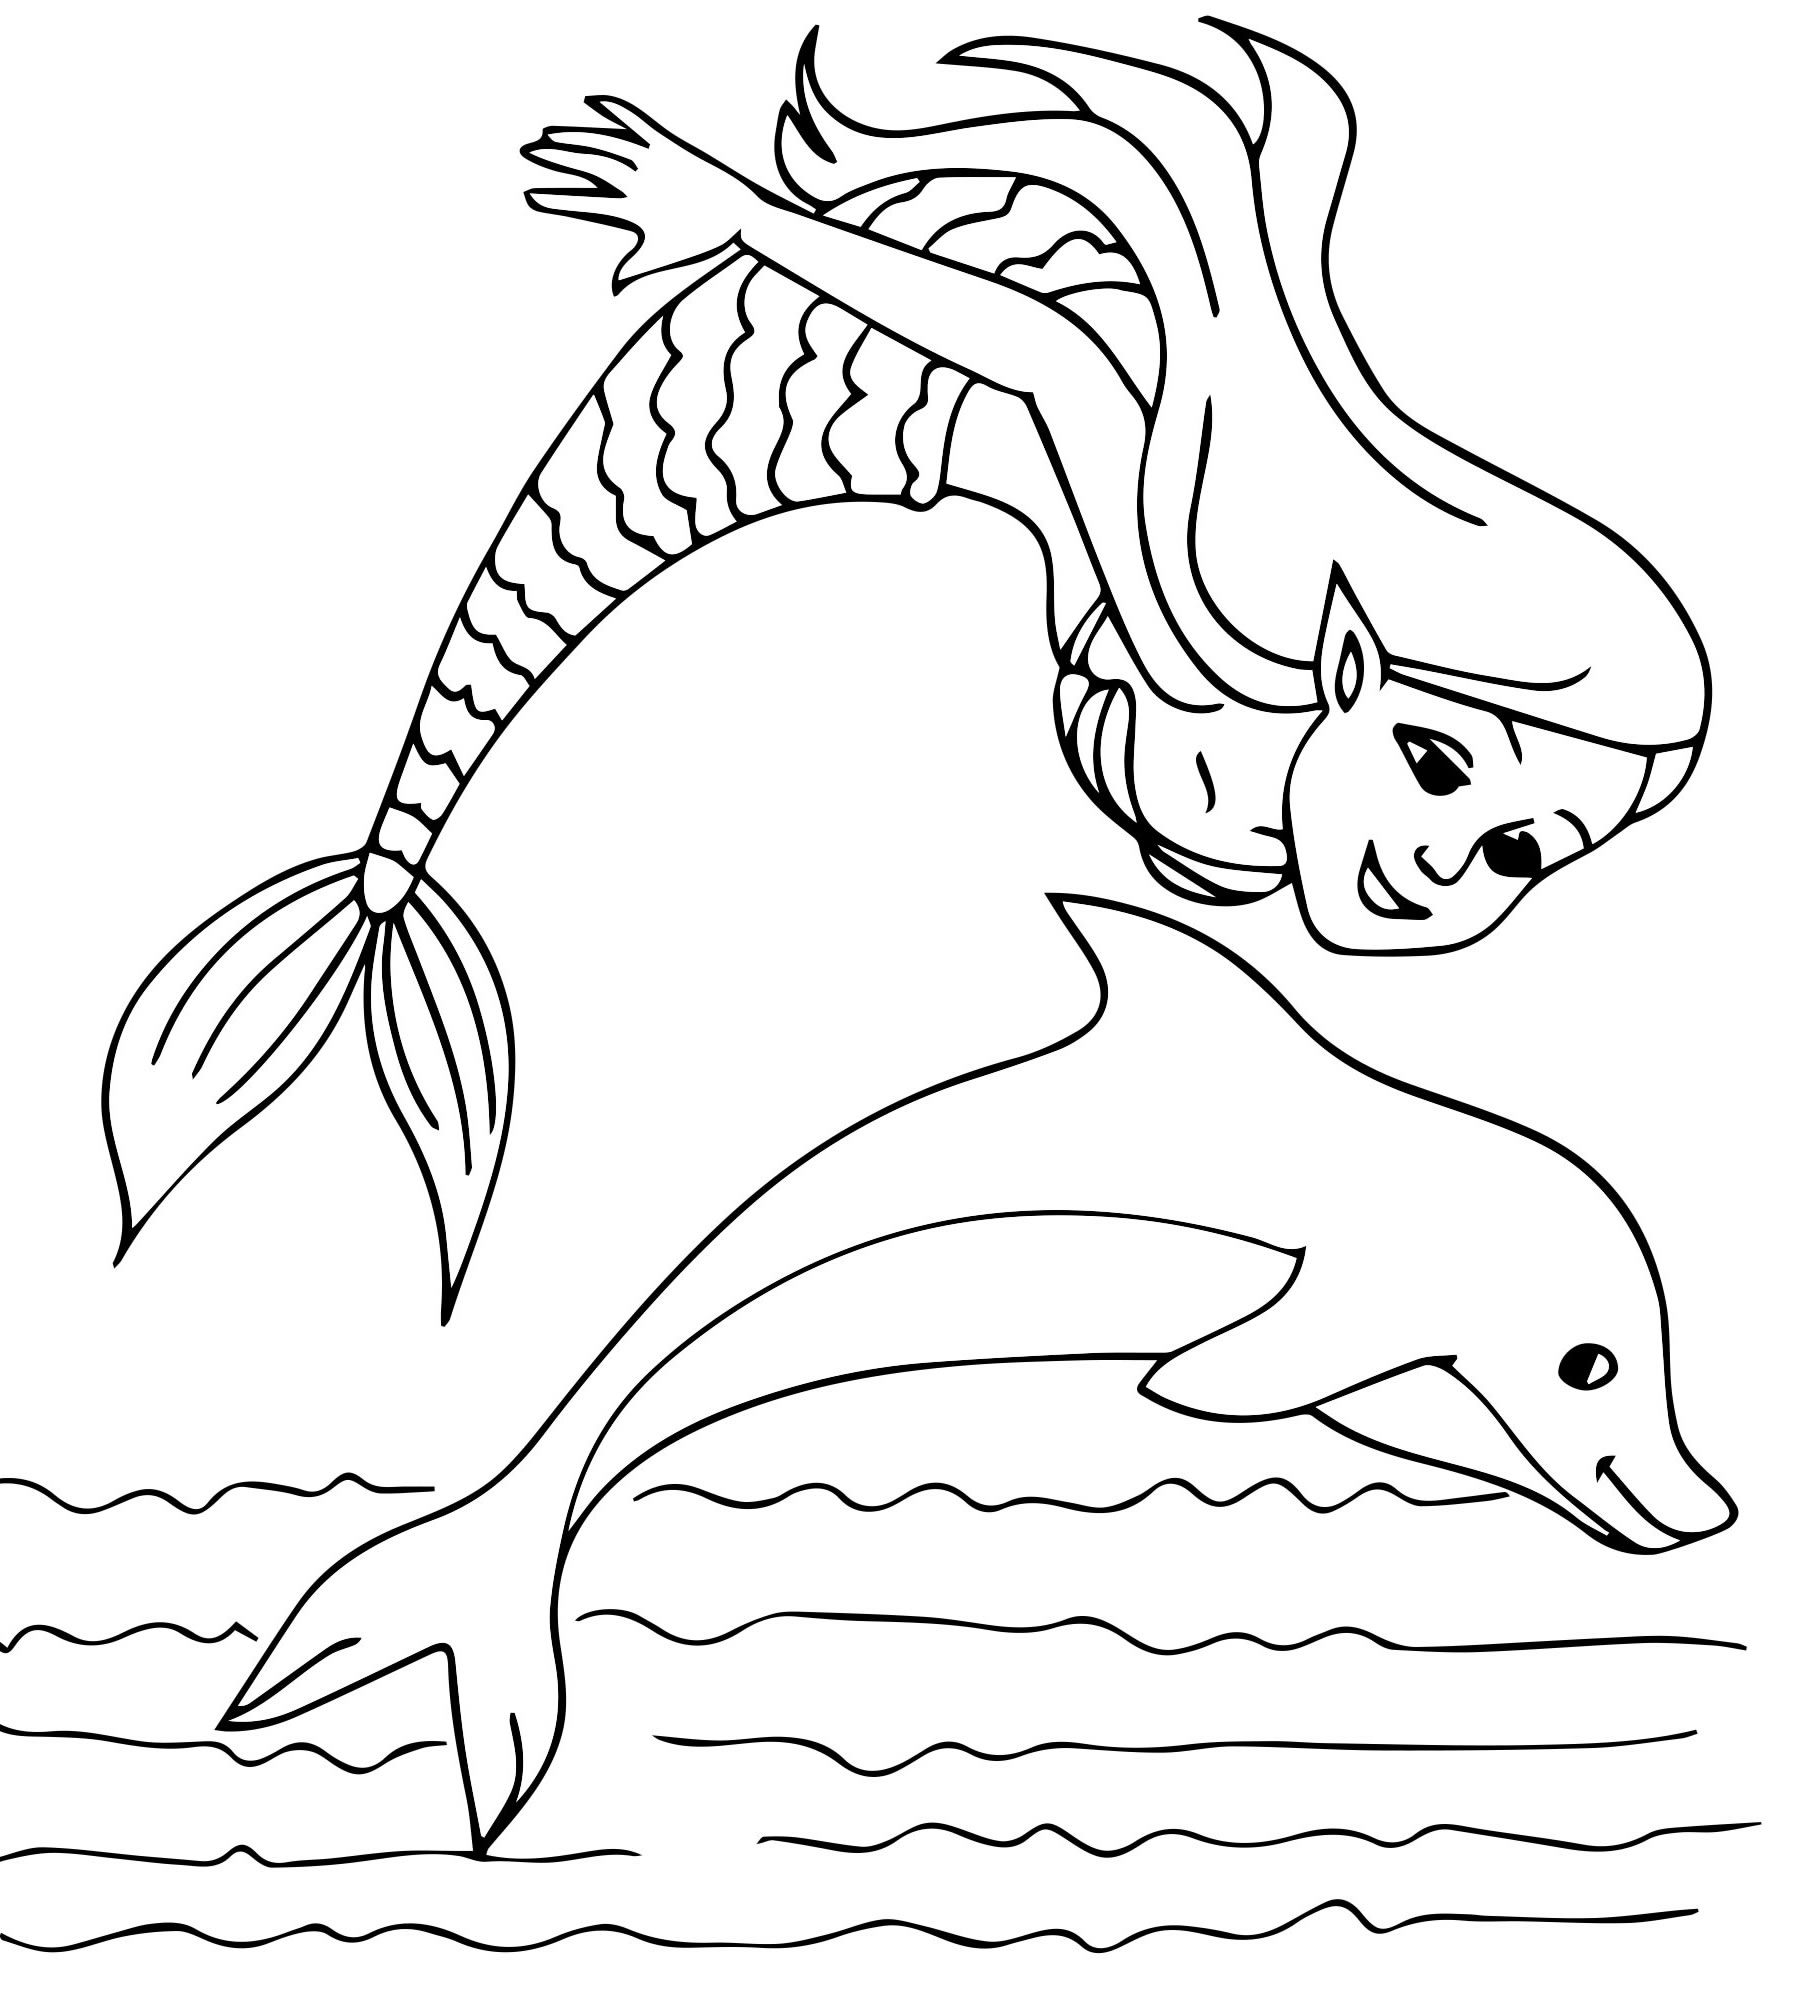 Дельфин и русалка раскраска для детей